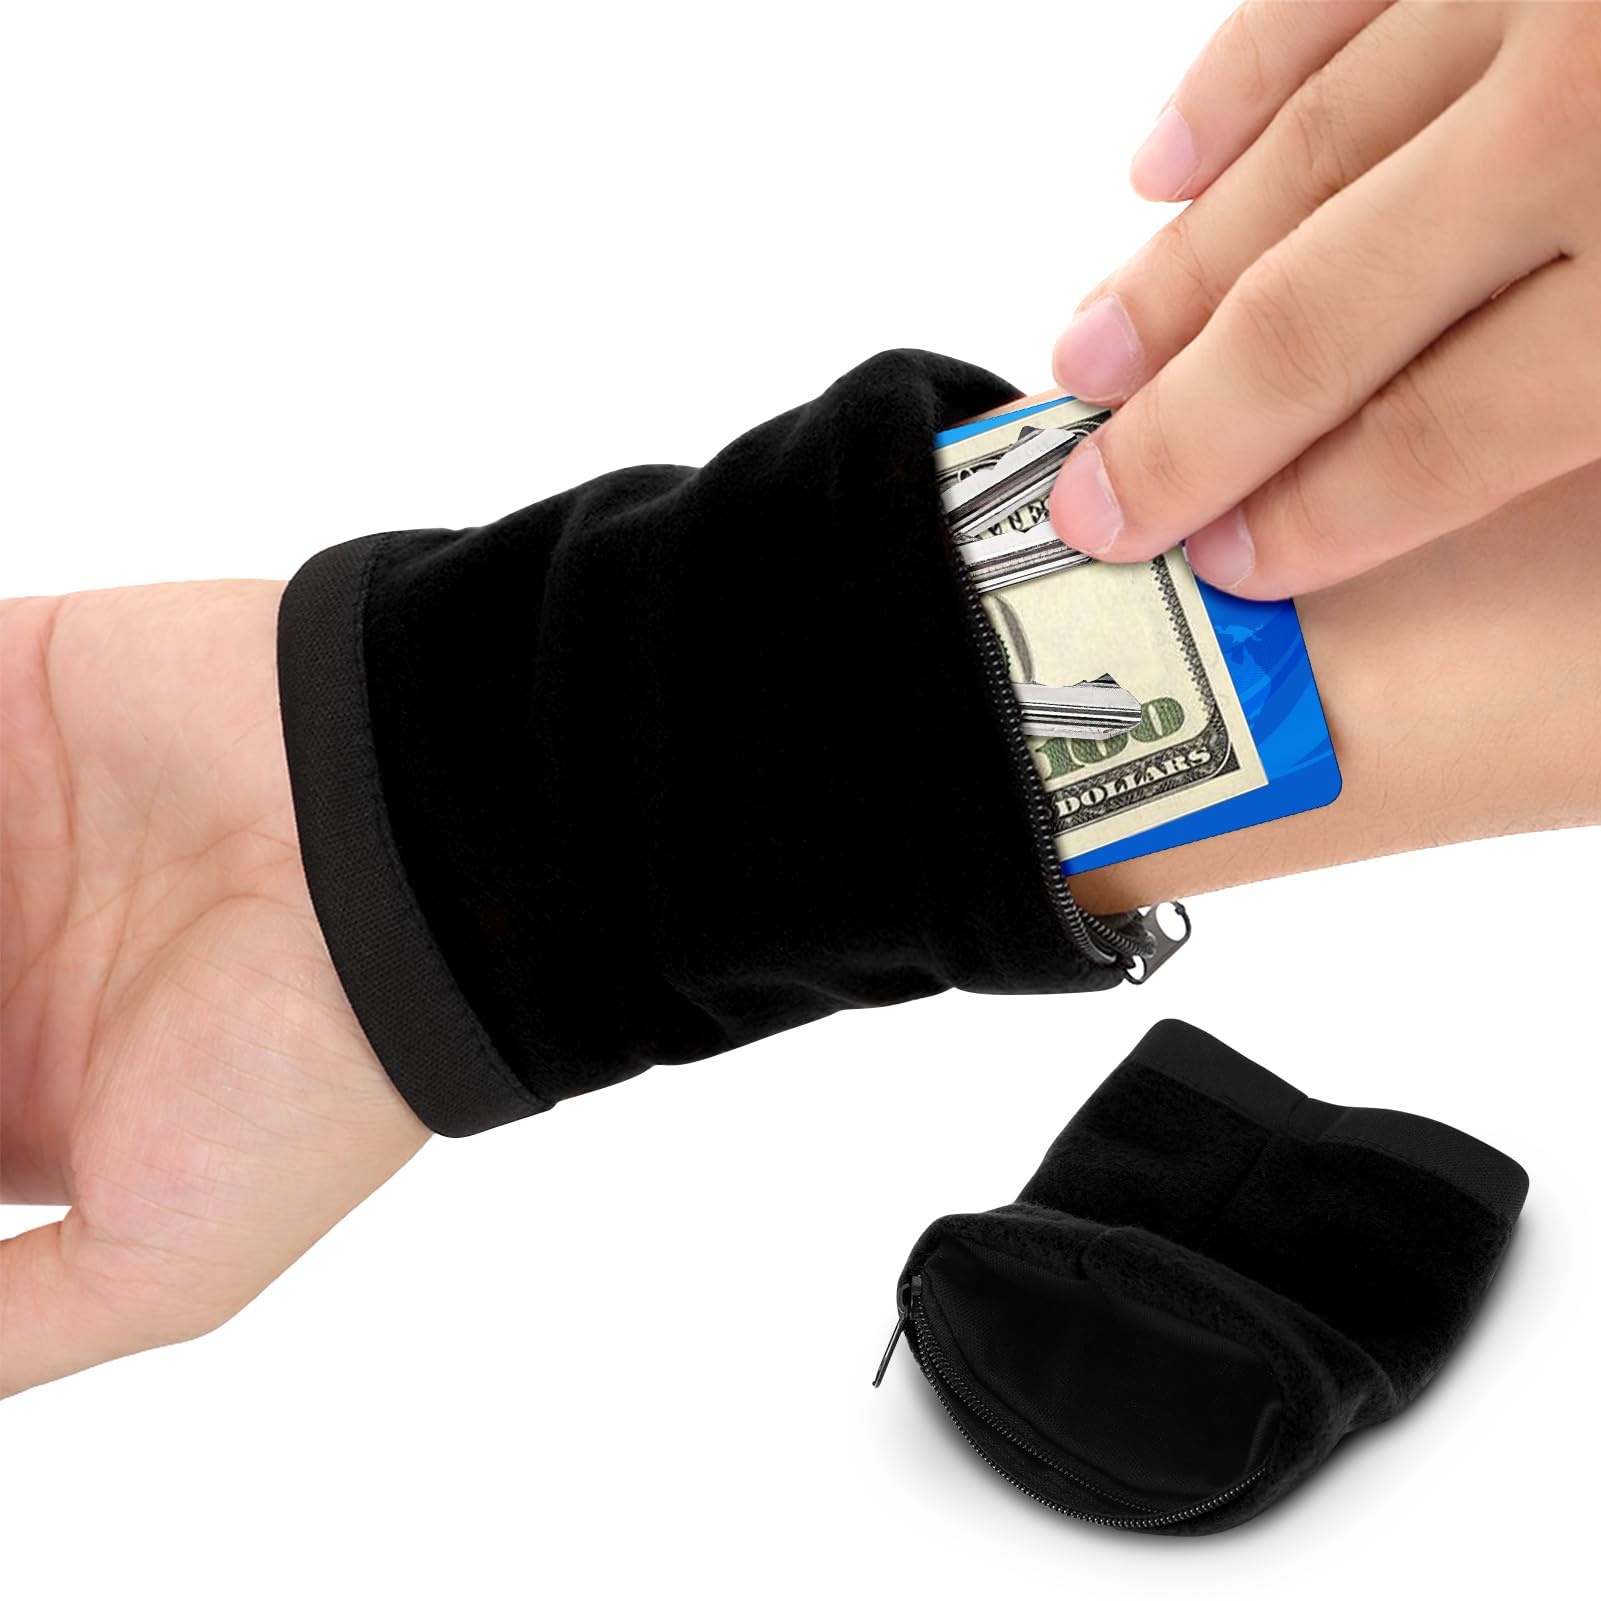 Yosoo Health Gear Sport Armband, Handgelenk Tasche Handgelenk Brieftasche mit Separable Fastener Schweißband Brieftasche für Telefon, Schlüssel, ID-Karten(Schwarz)